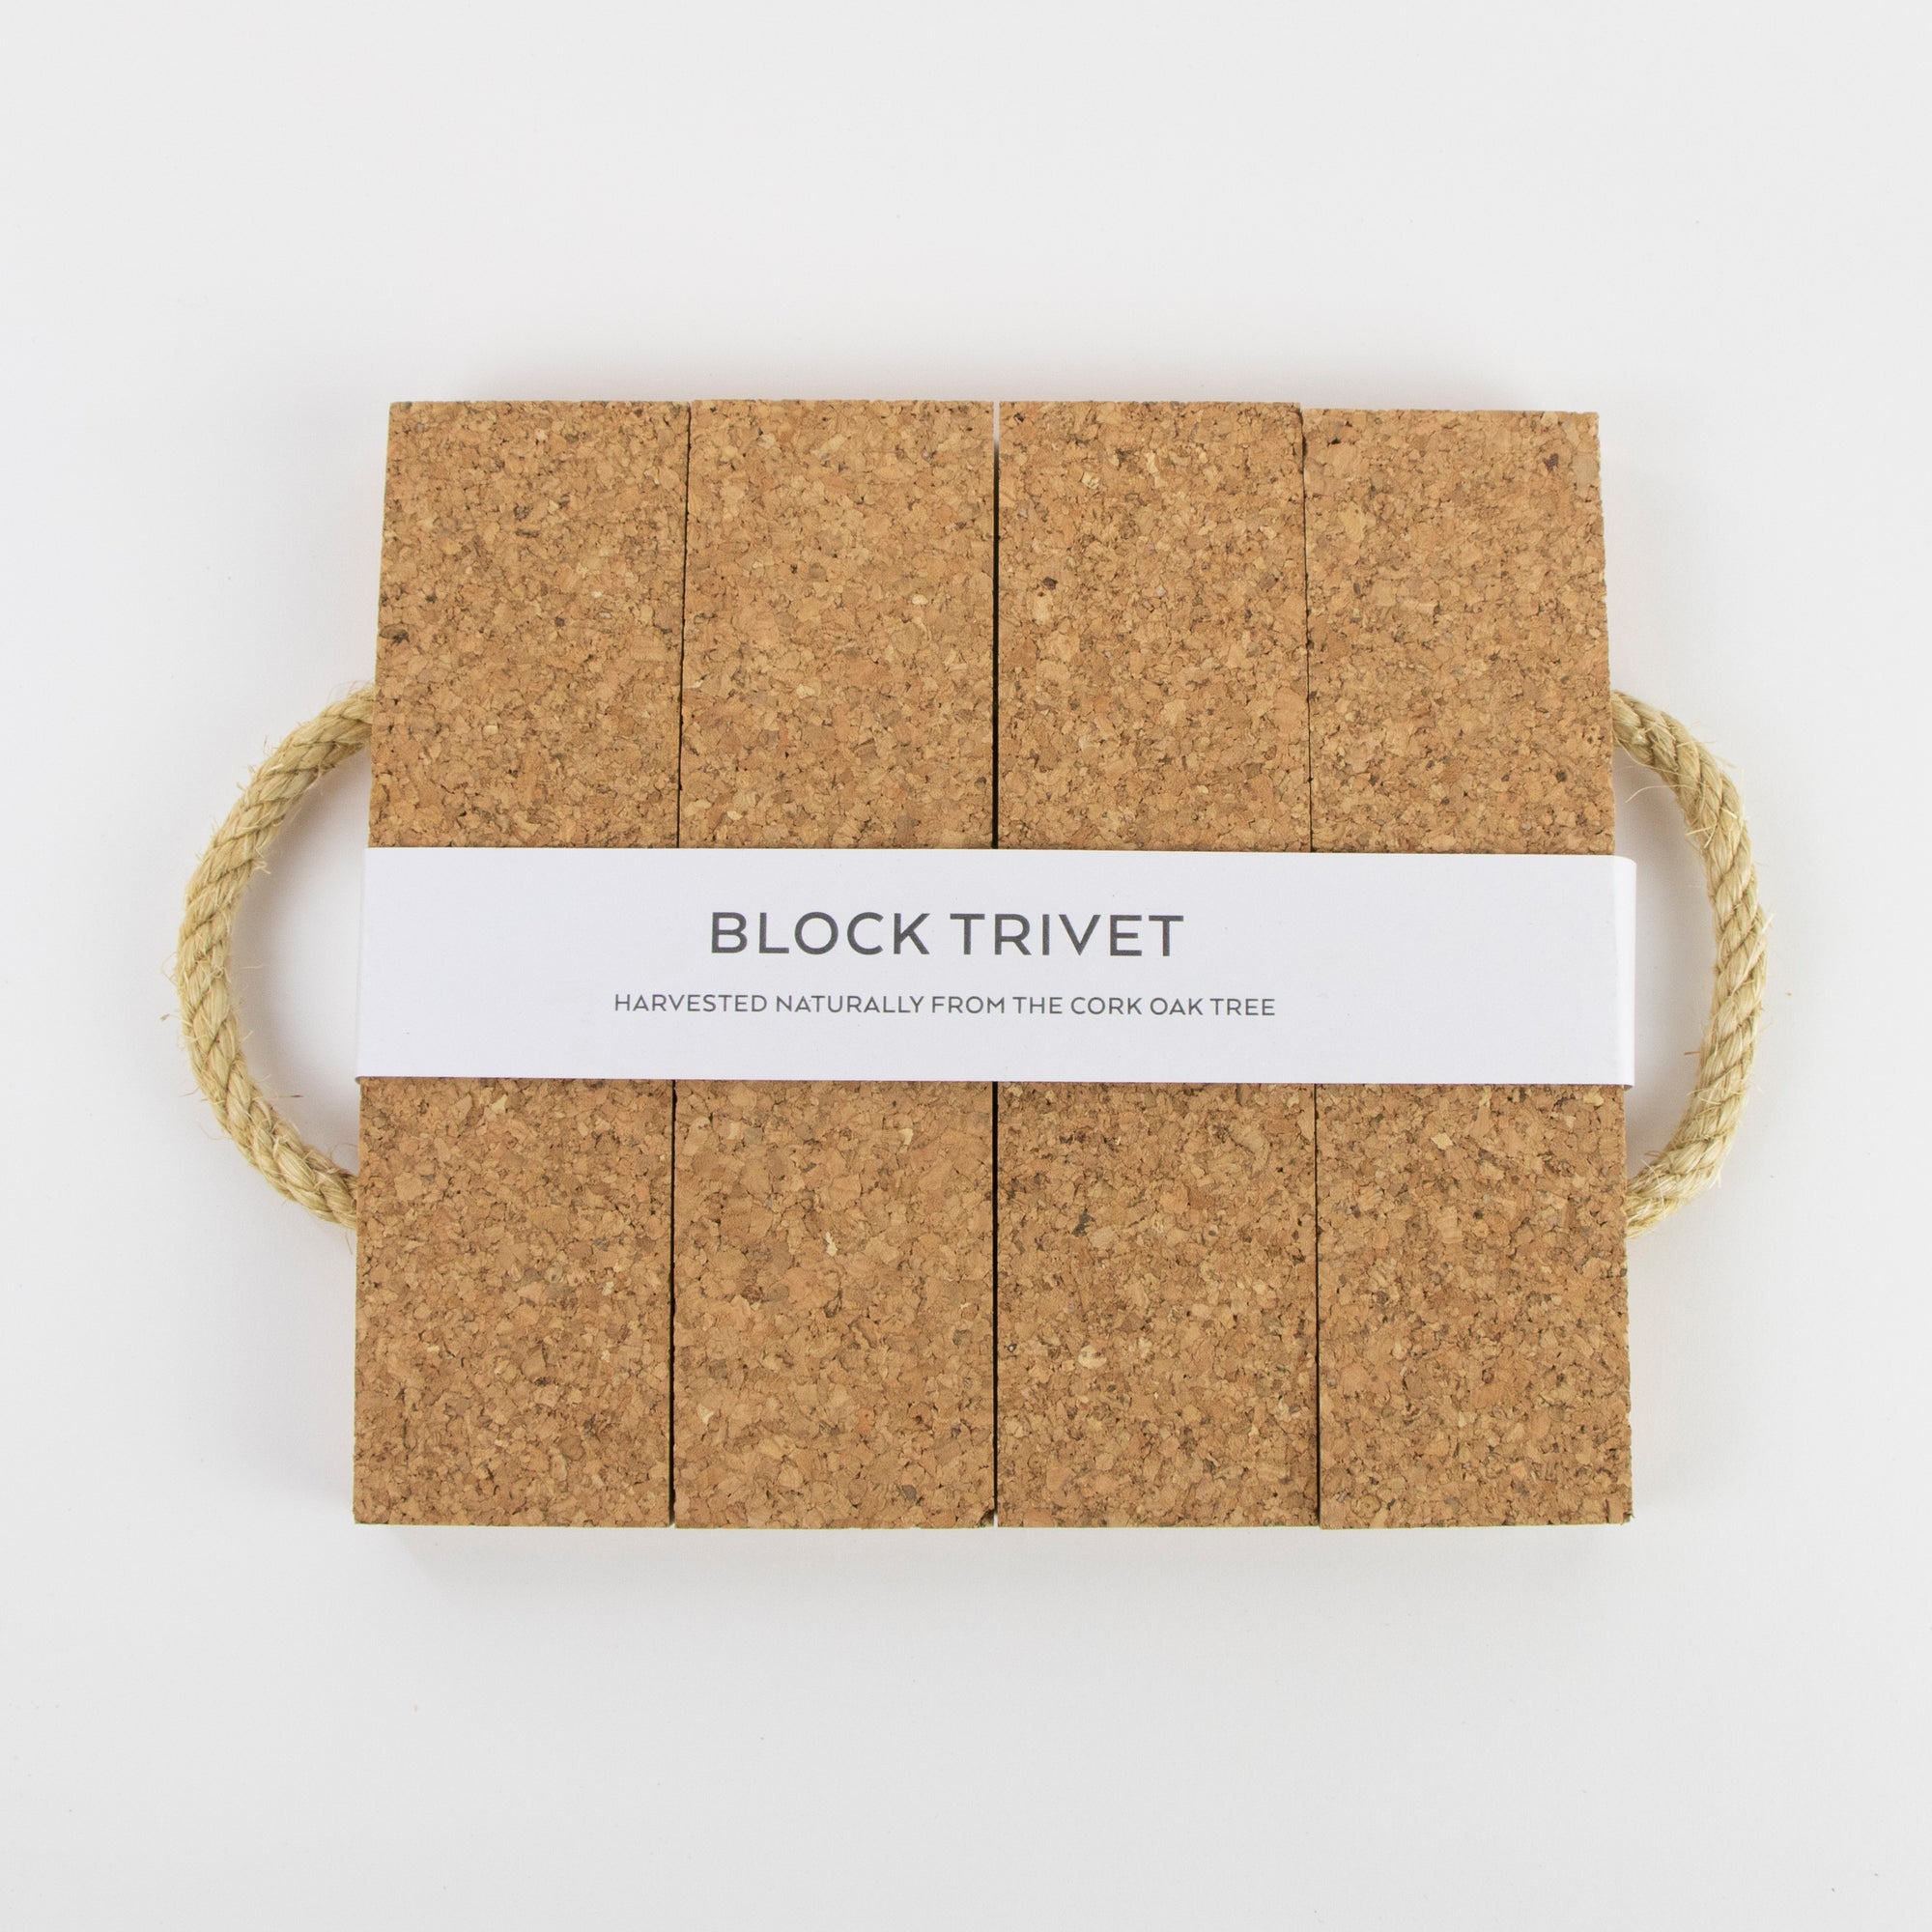 Organic cork block trivet with rope handles